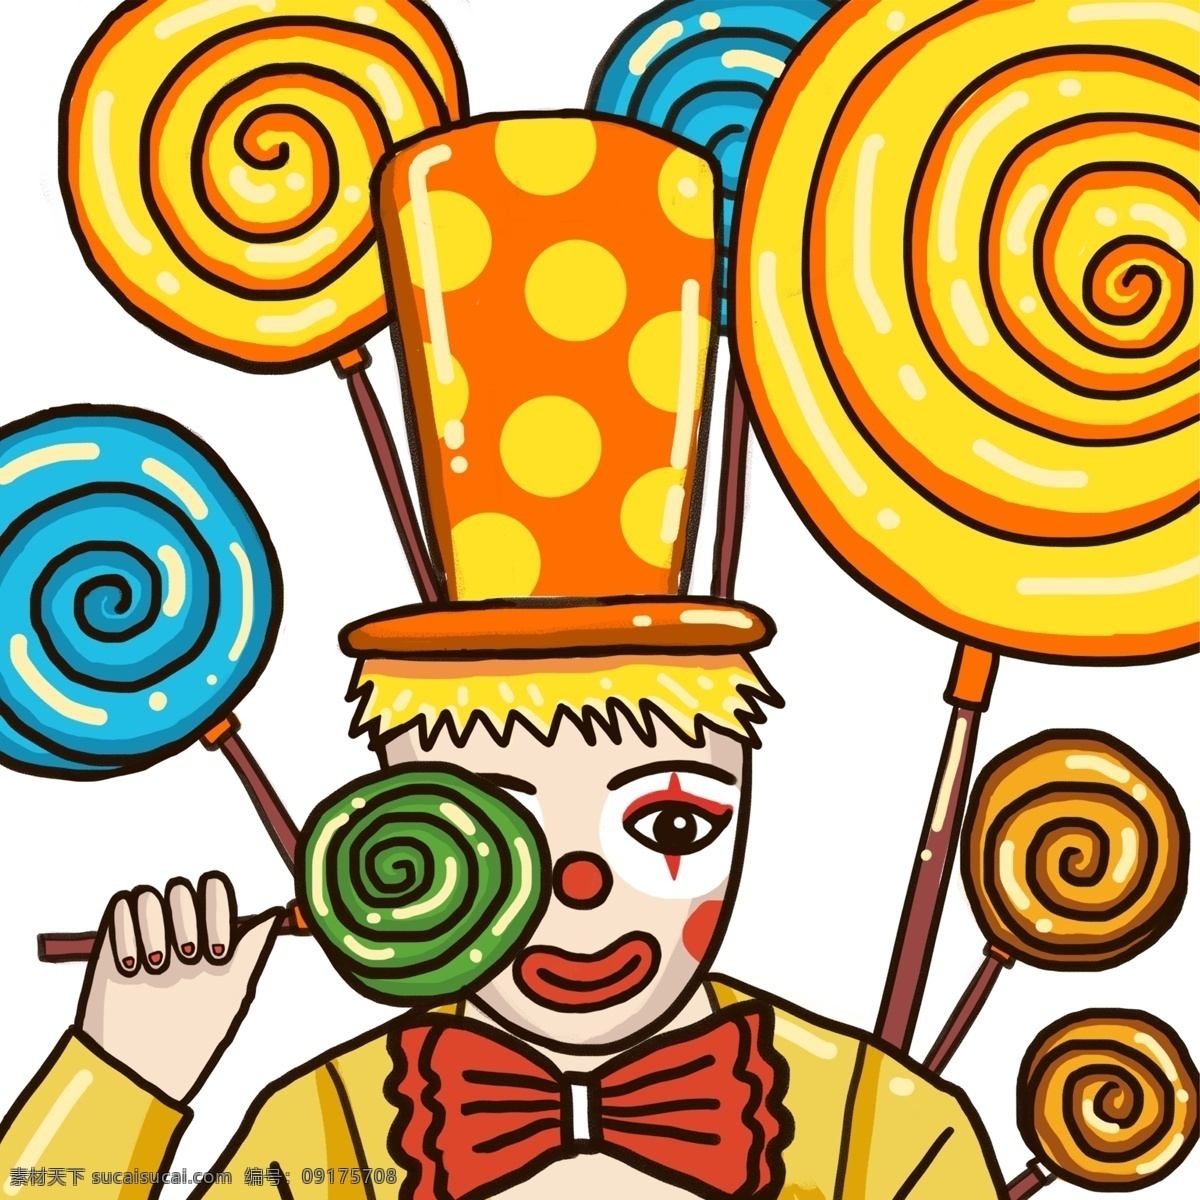 彩色 创意 小丑 卡通 插画 元素 手绘 帽子 穿着 服装衣服 扁平化 光泽 圆点 美食 食物 节日 鼻子 嘴巴